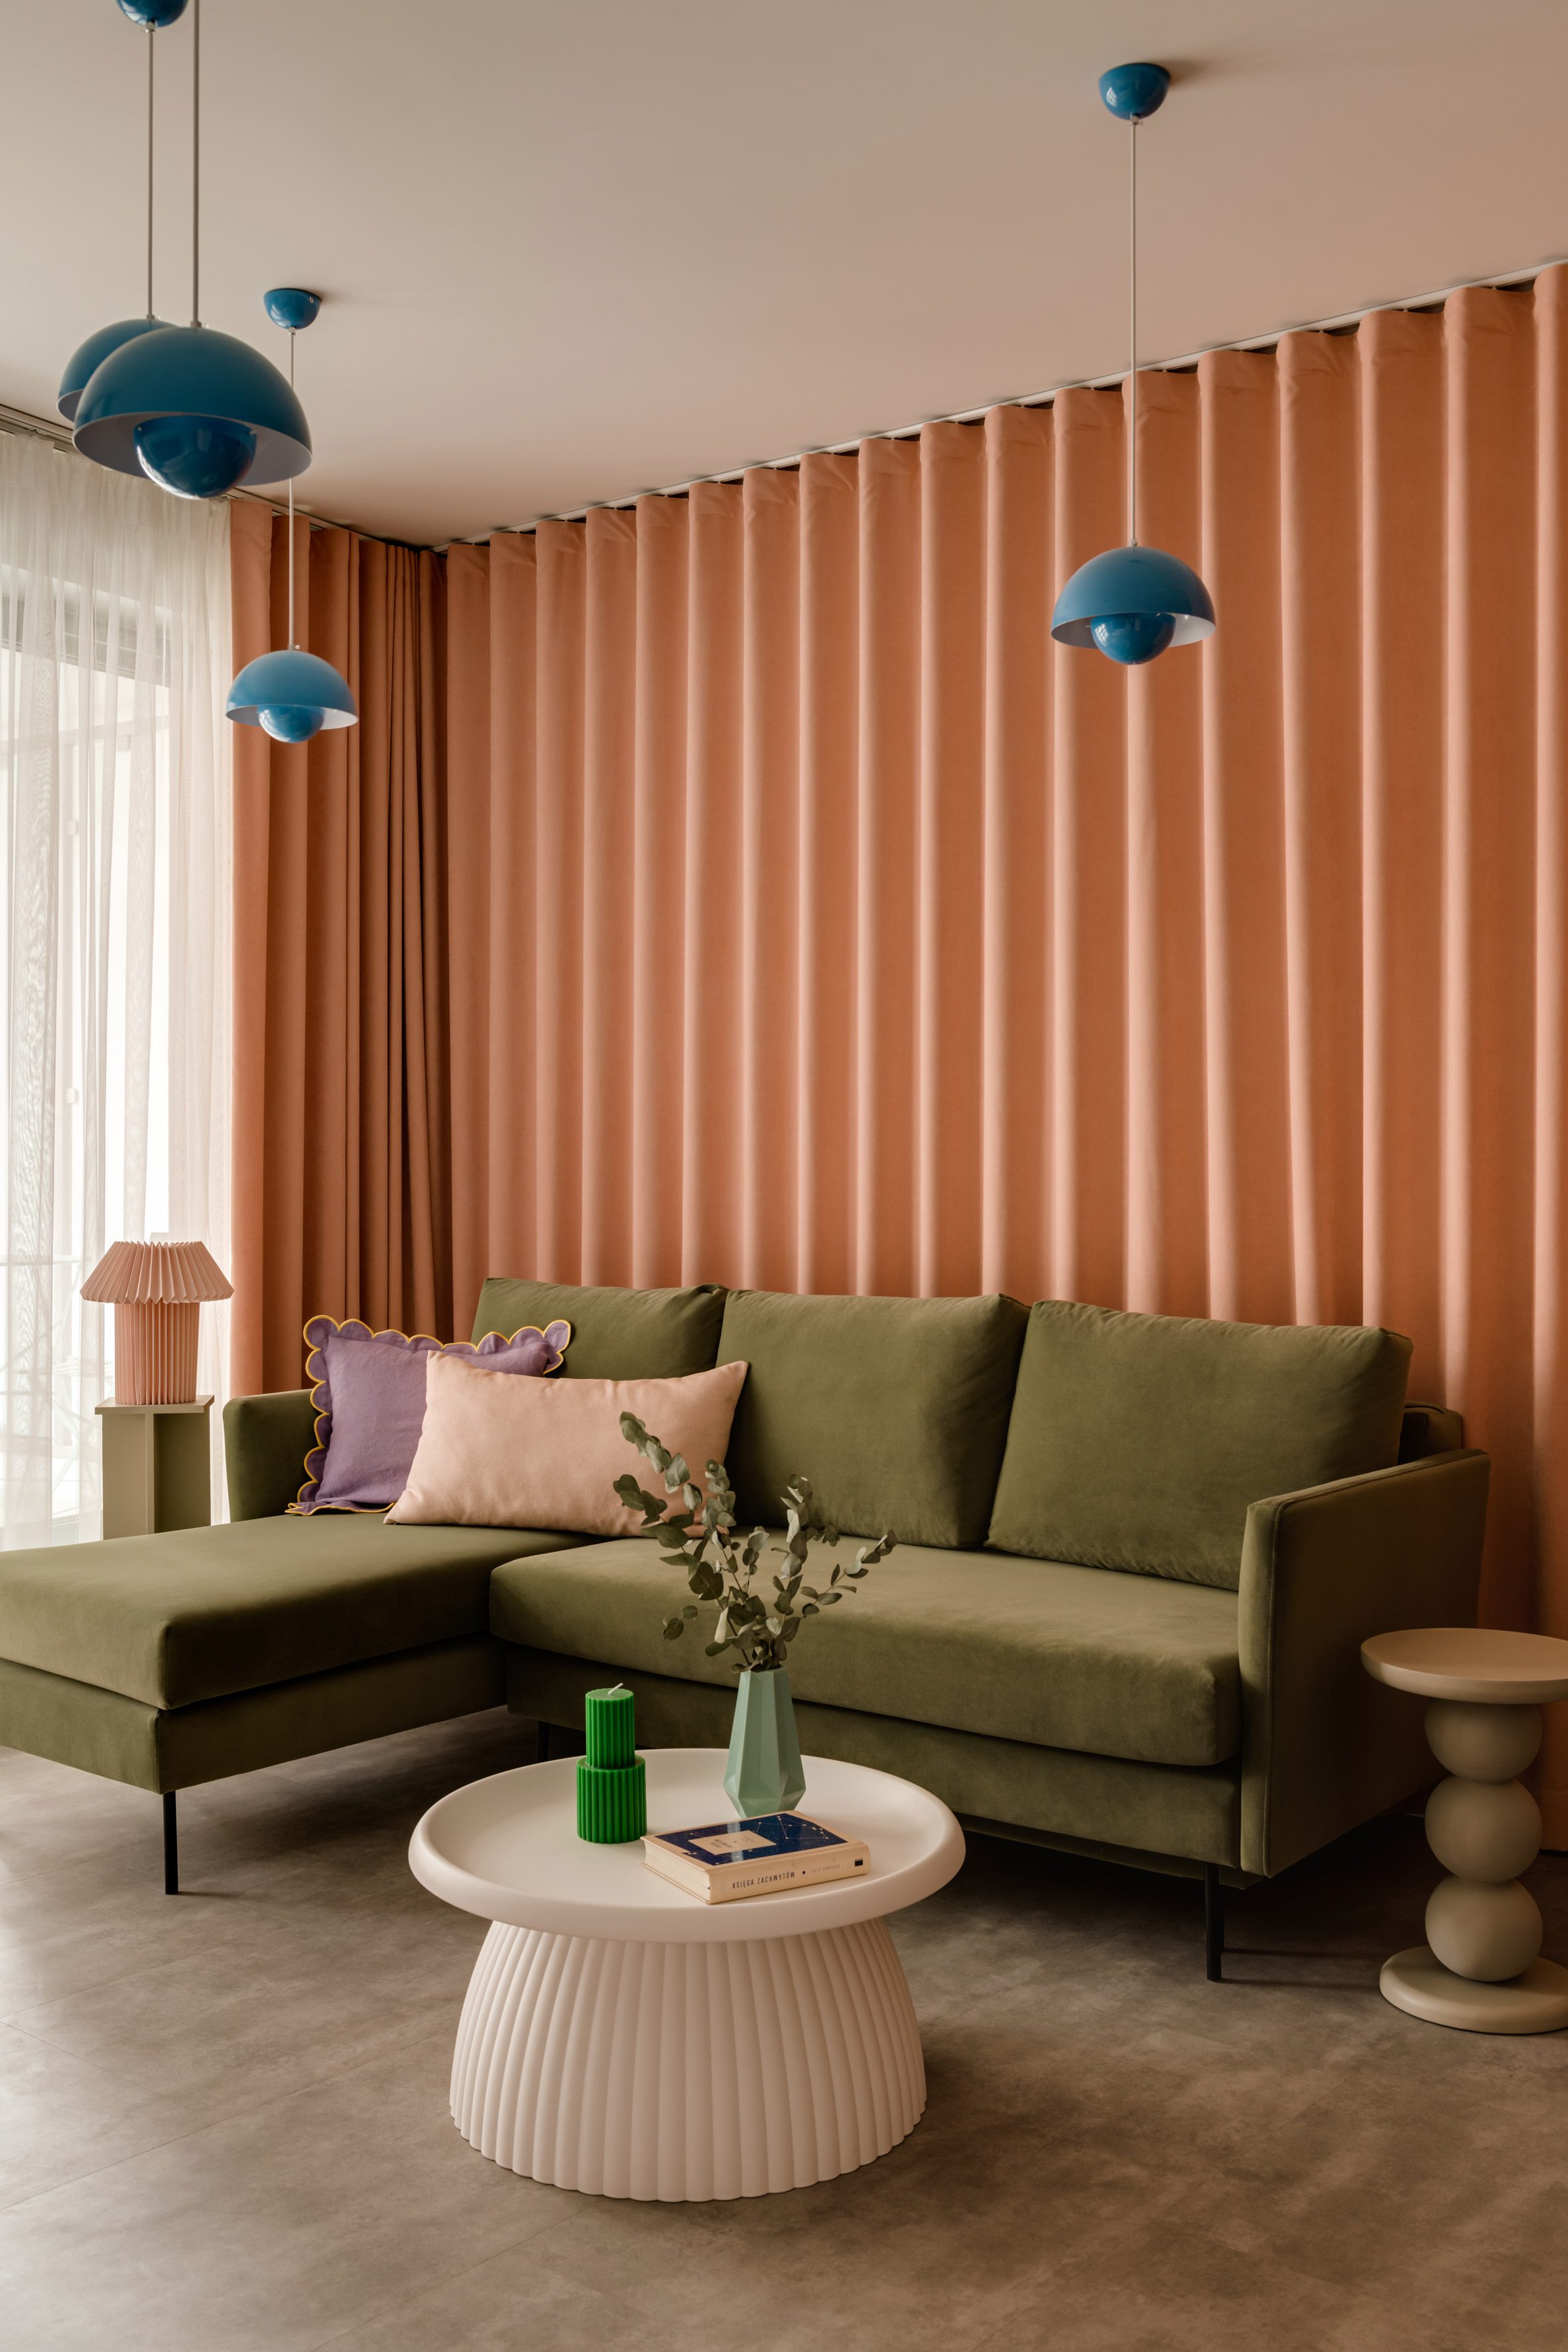 Furora Studio设计的Kraków出租公寓Pops具有“非常甜美的内部”|ART-Arrakis | 建筑室内设计的创新与灵感